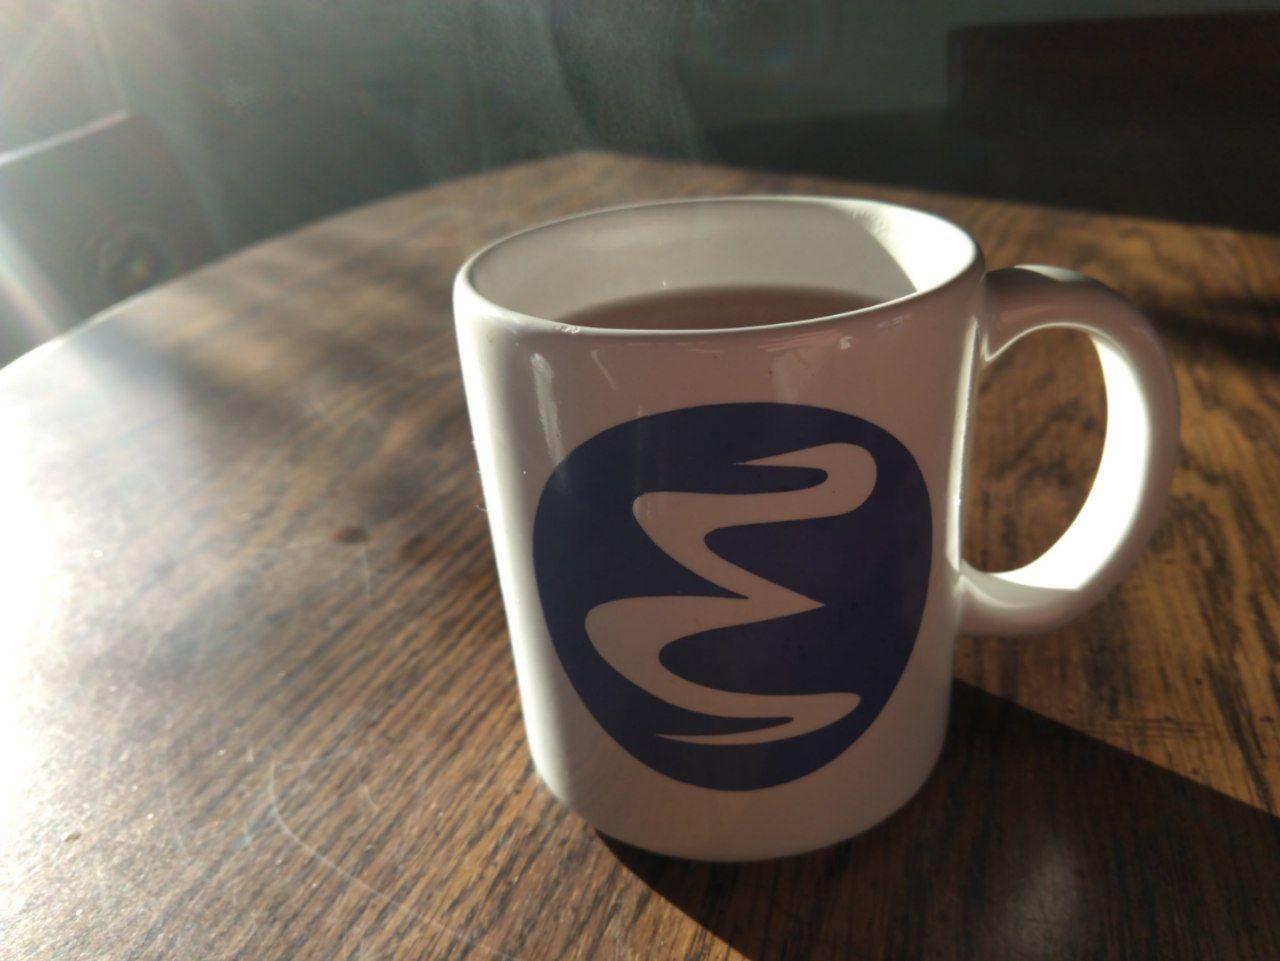 An emacs mug filled with hot tea.